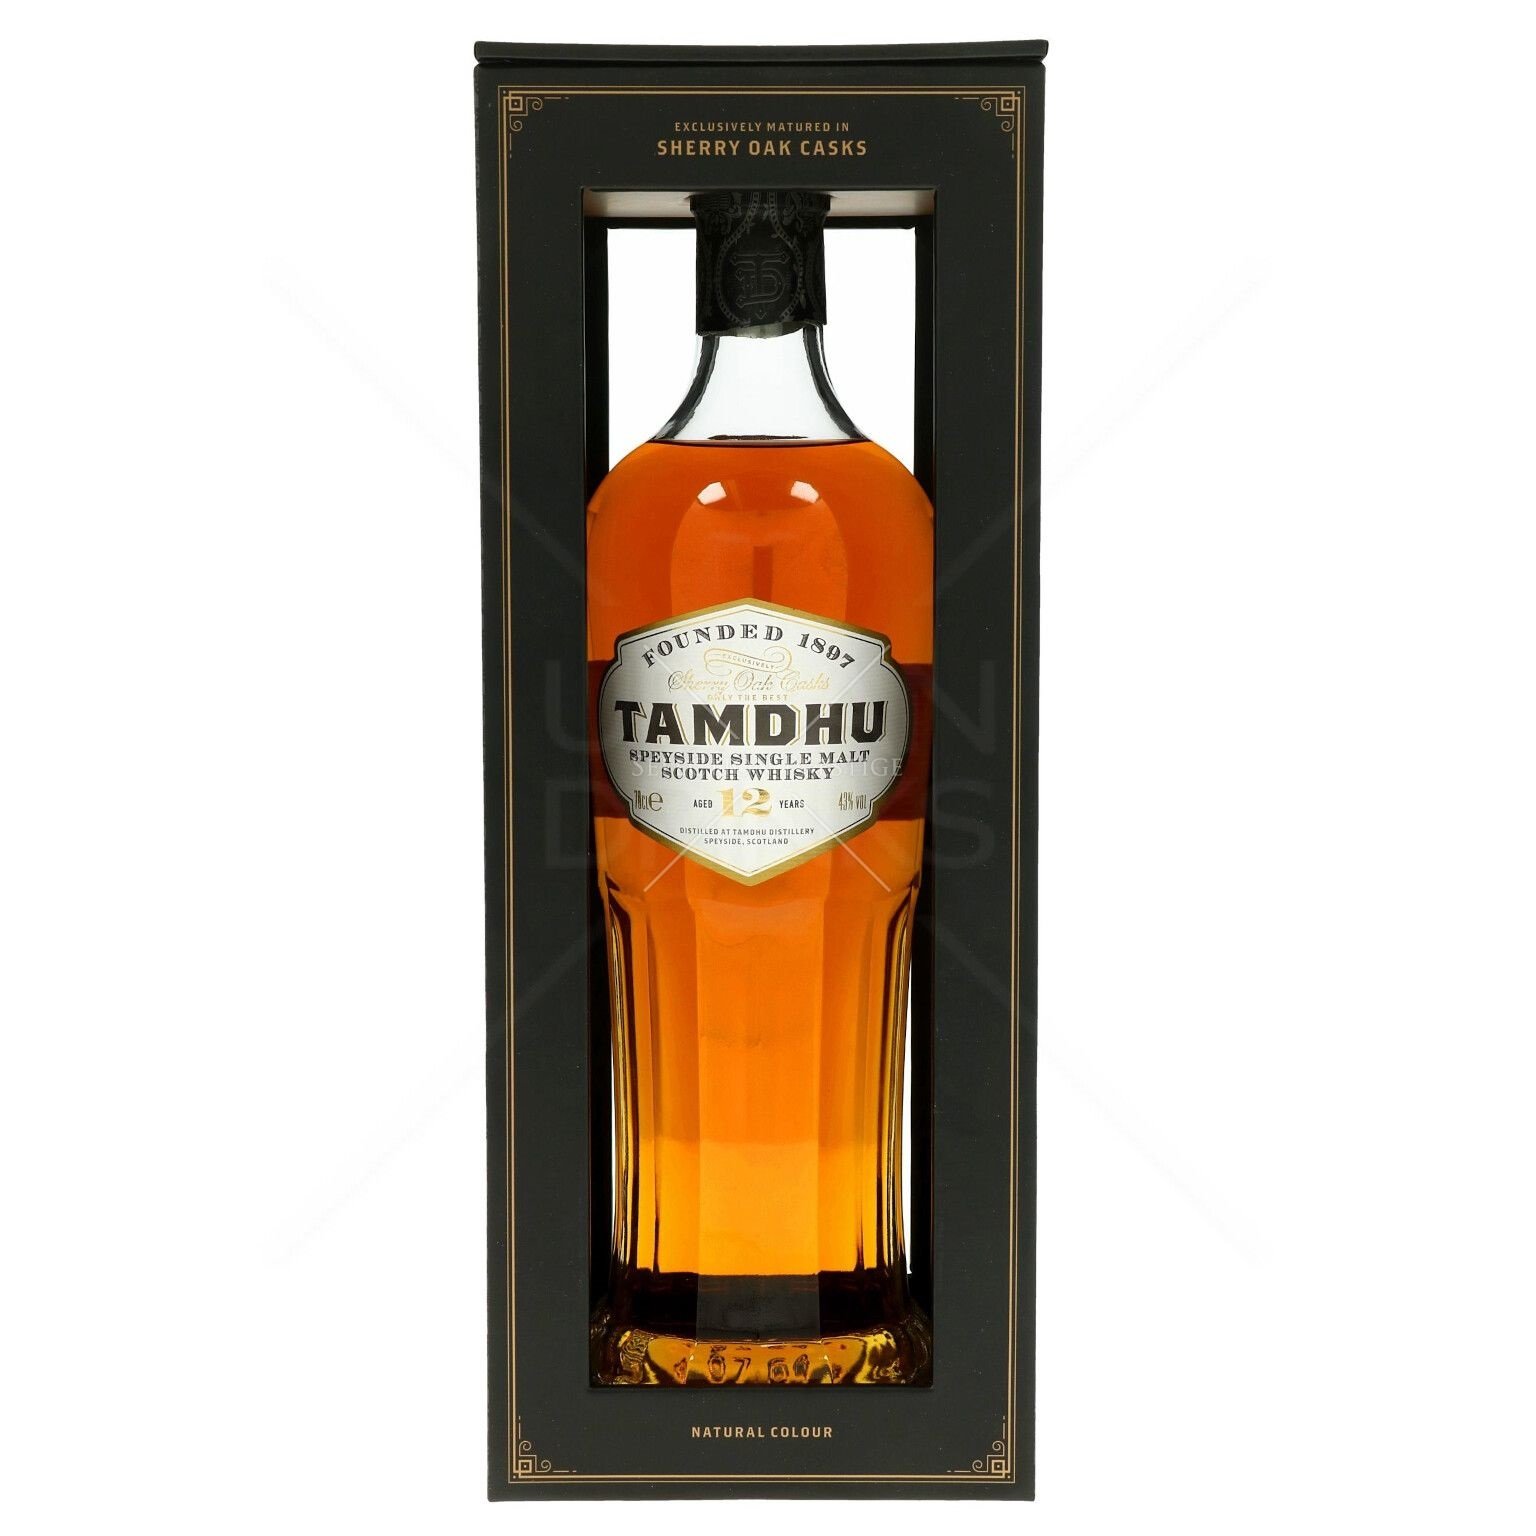 Віскі Tamdhu Single Malt Scotch Whisky 12 років, в подарічній упаковці, 43%, 0,7 л - фото 1